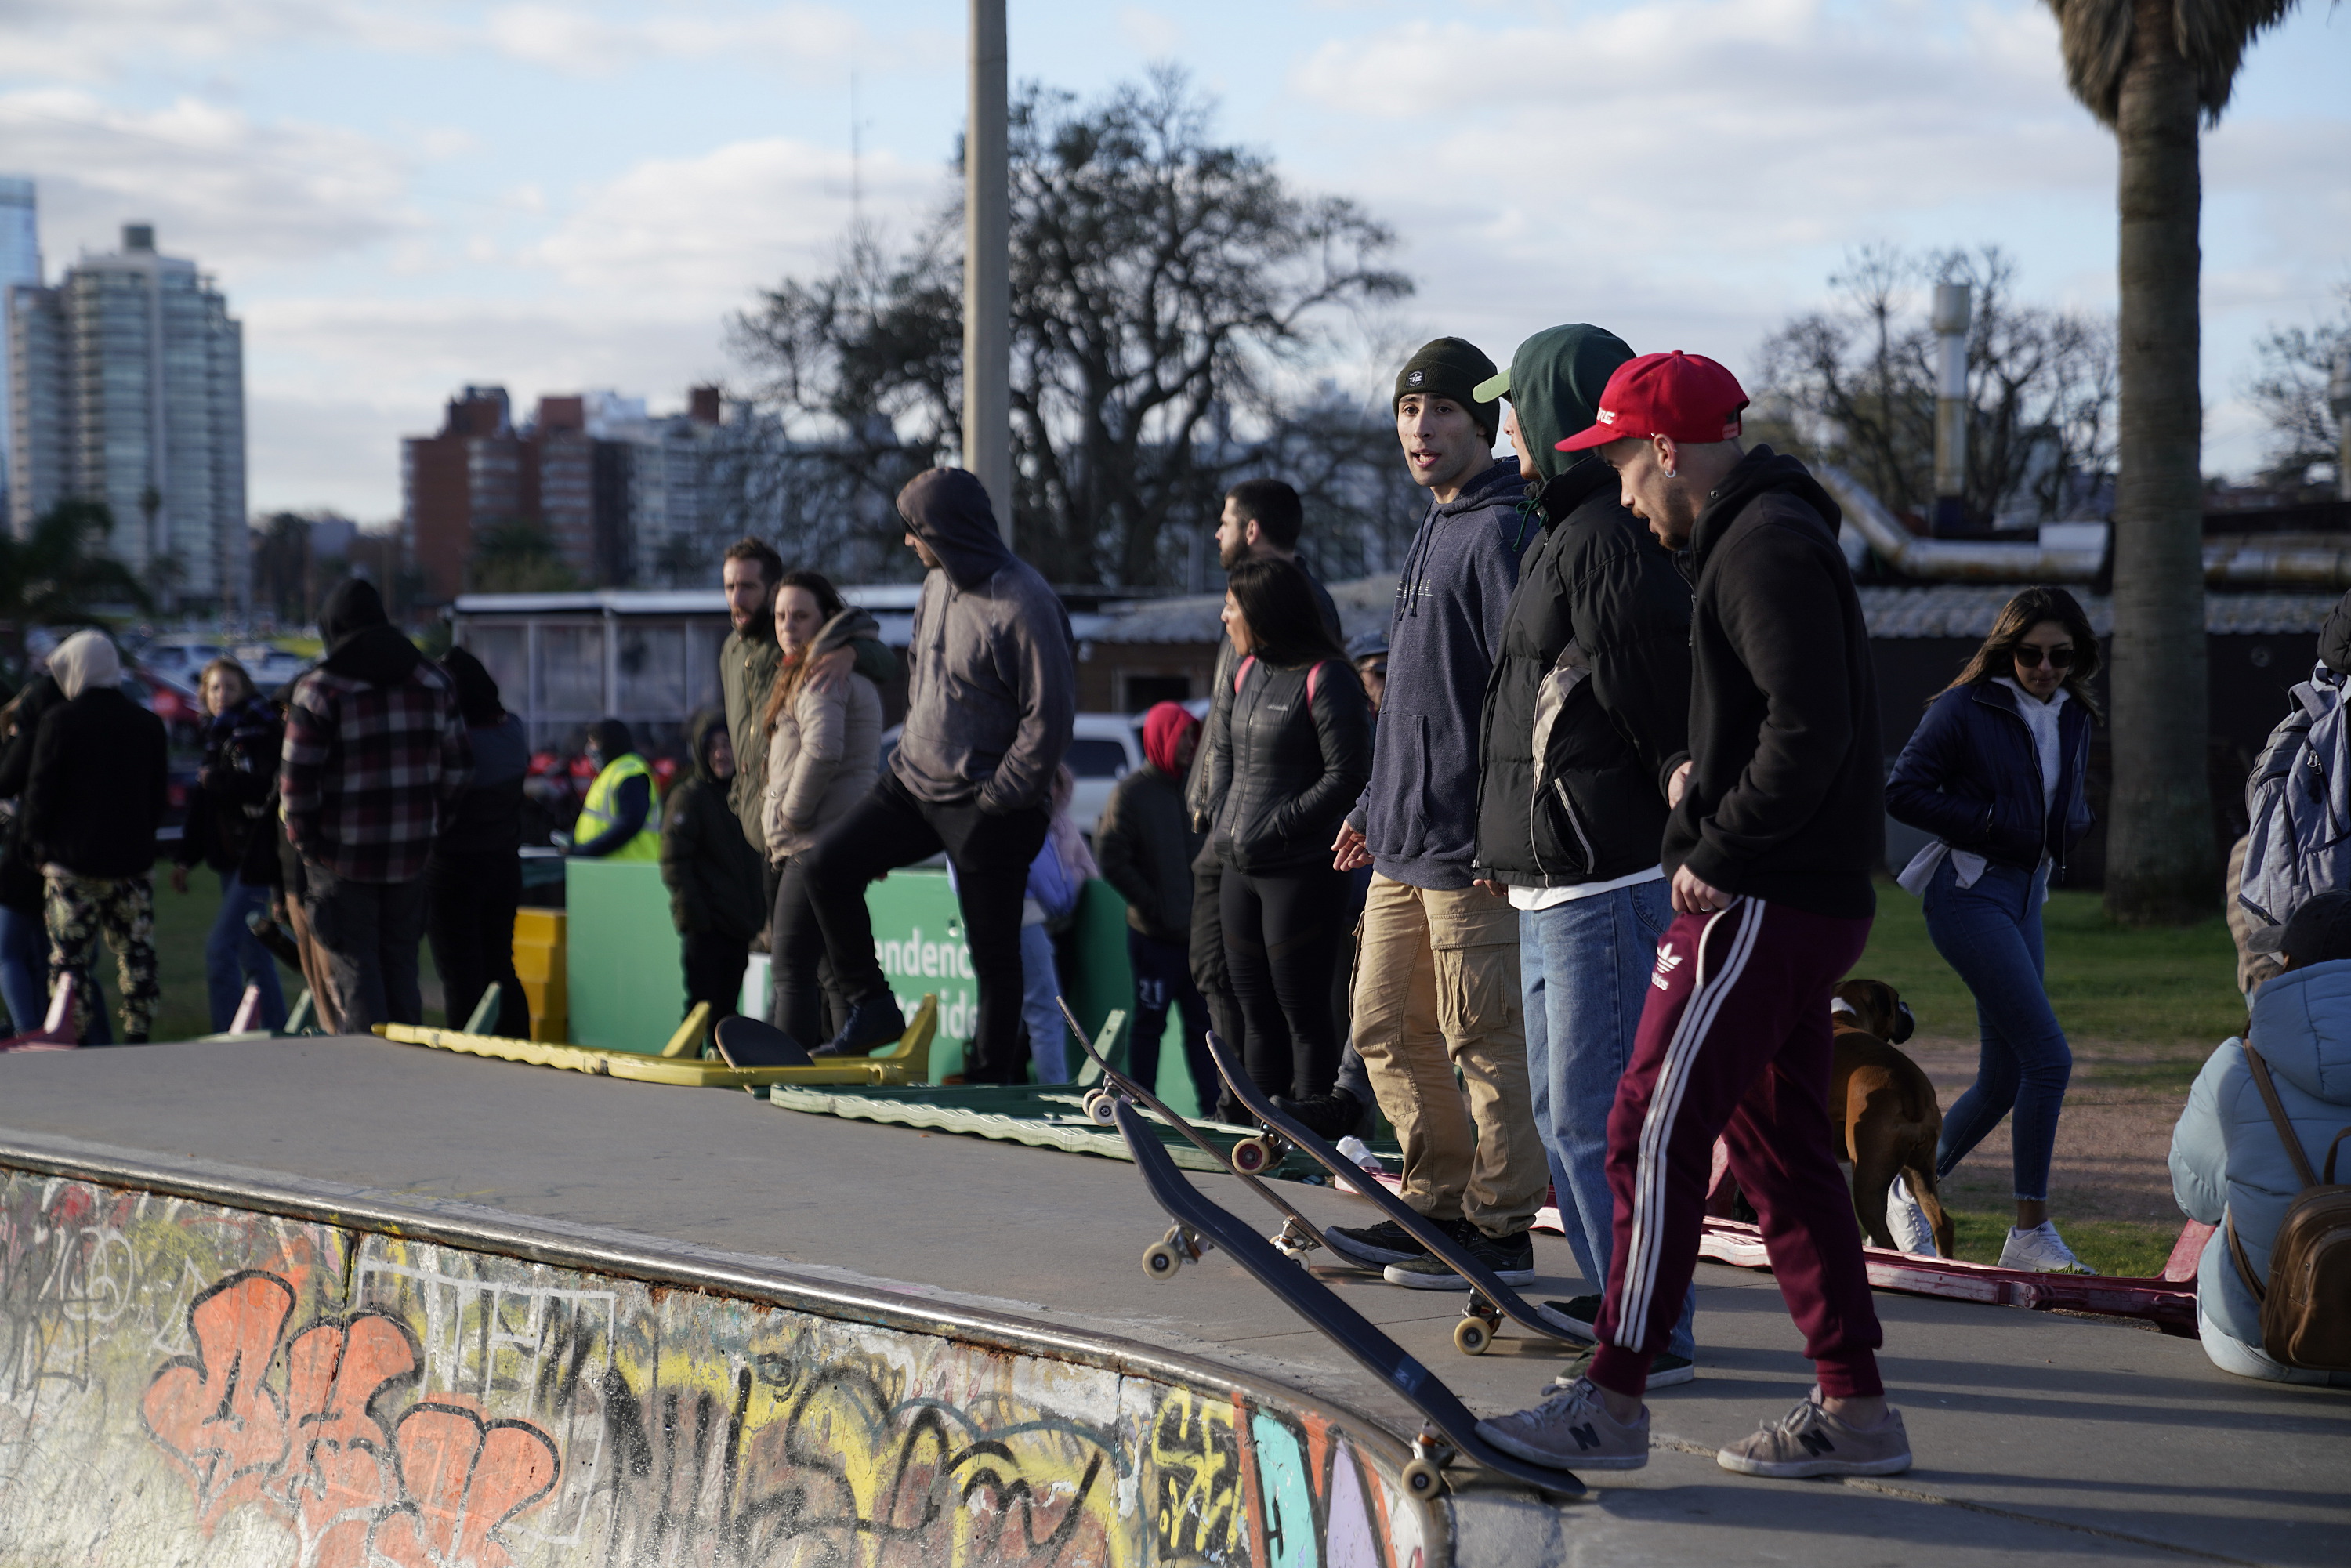  Actividades en el Skate Park de Buceo en el marco del Plan ABC + Deporte y Cultura